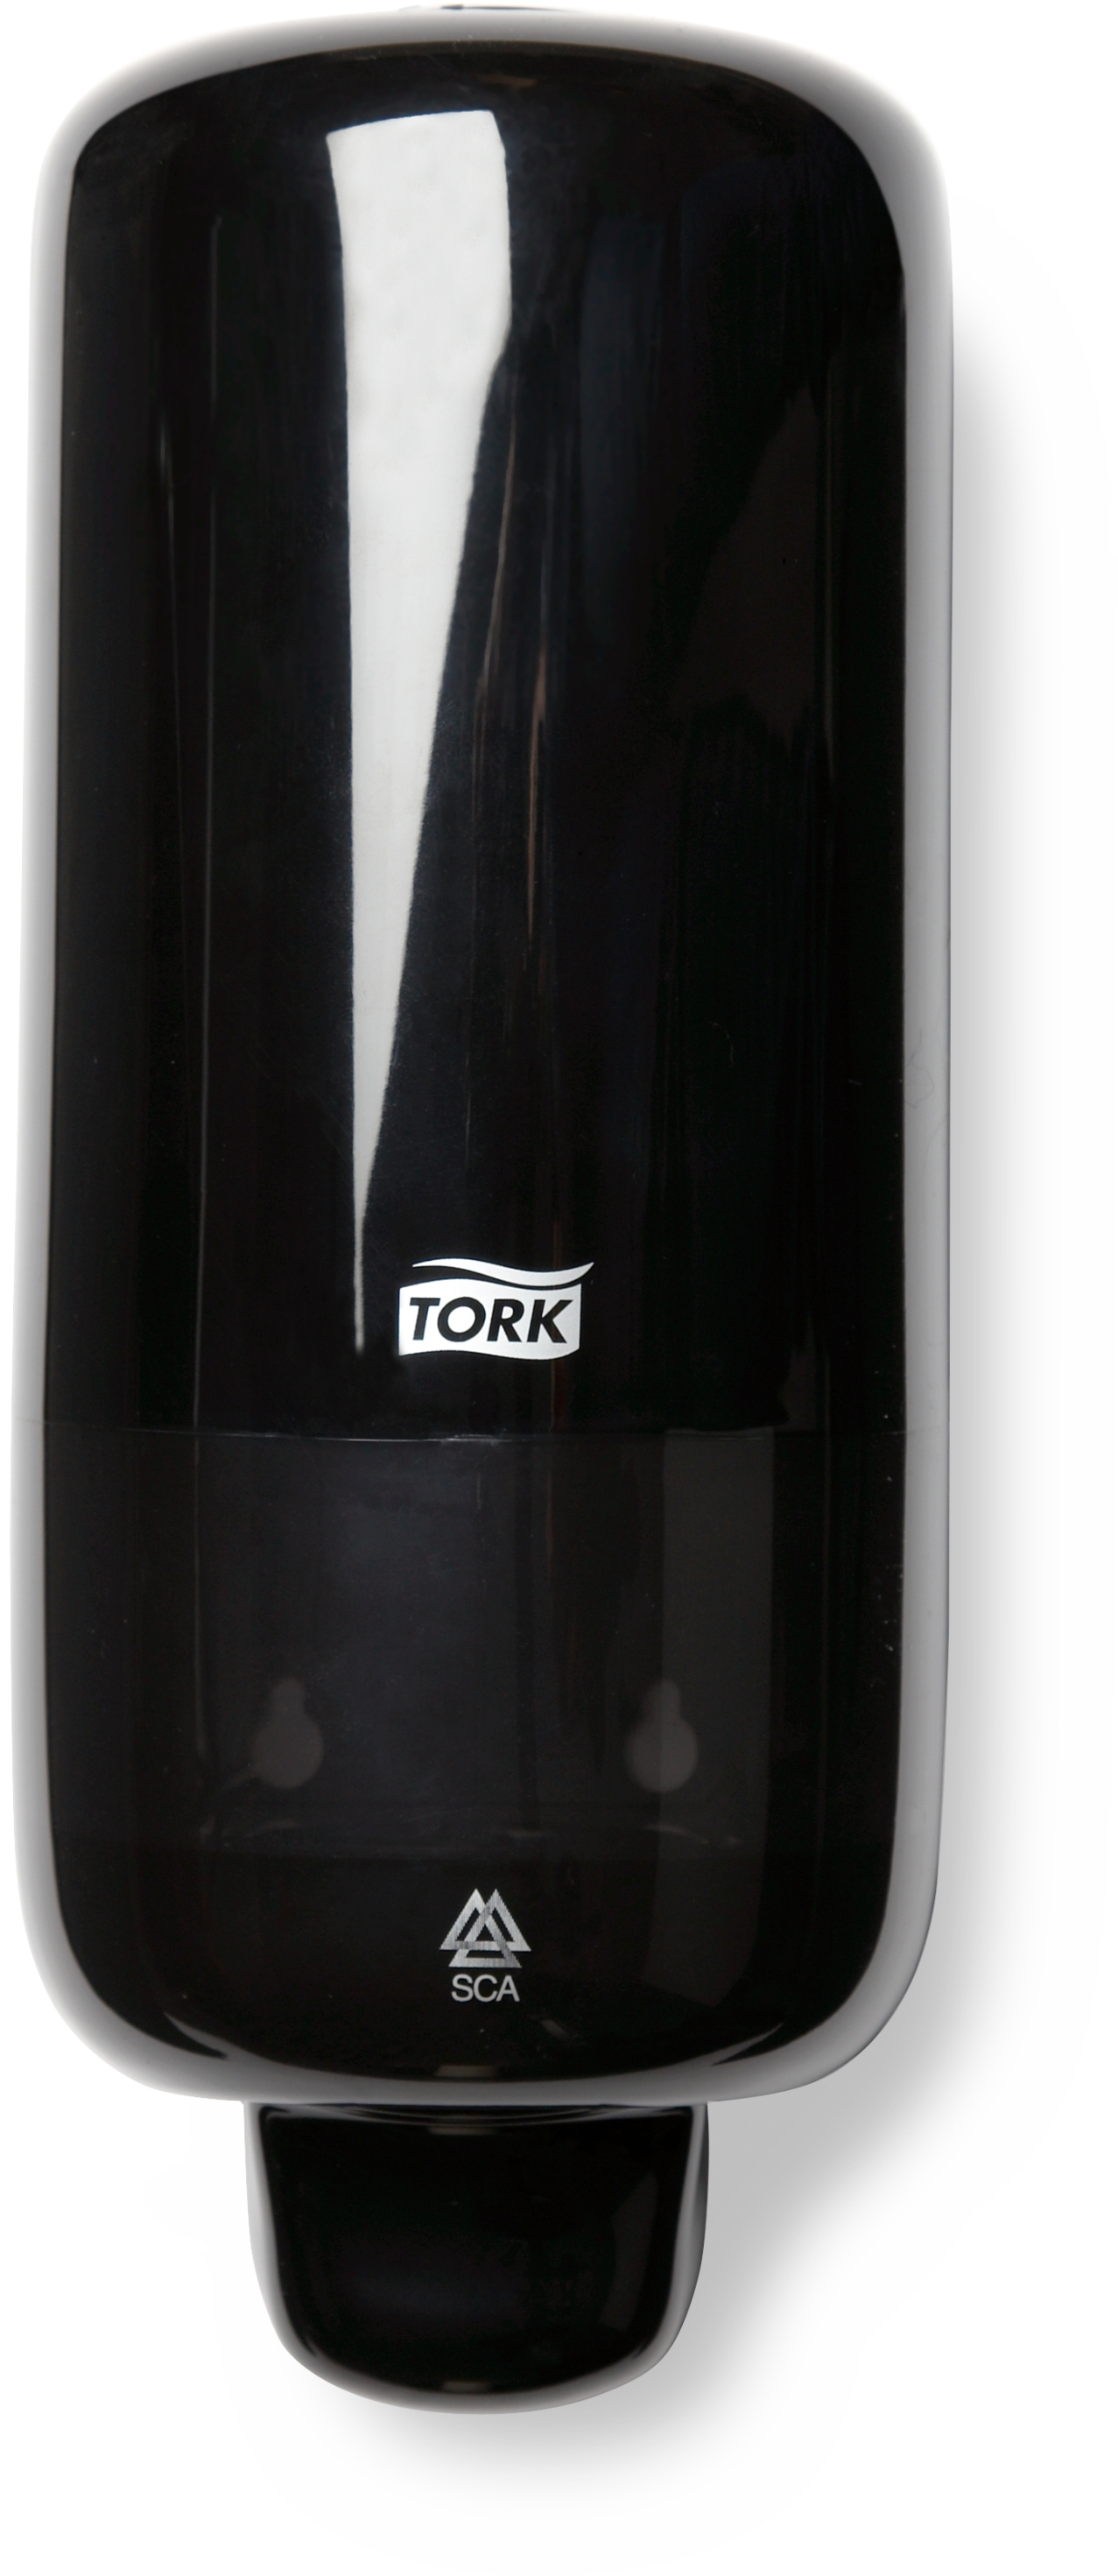 TORK Schaumseifenspender S4 561508 schwarz 29x11x11cm